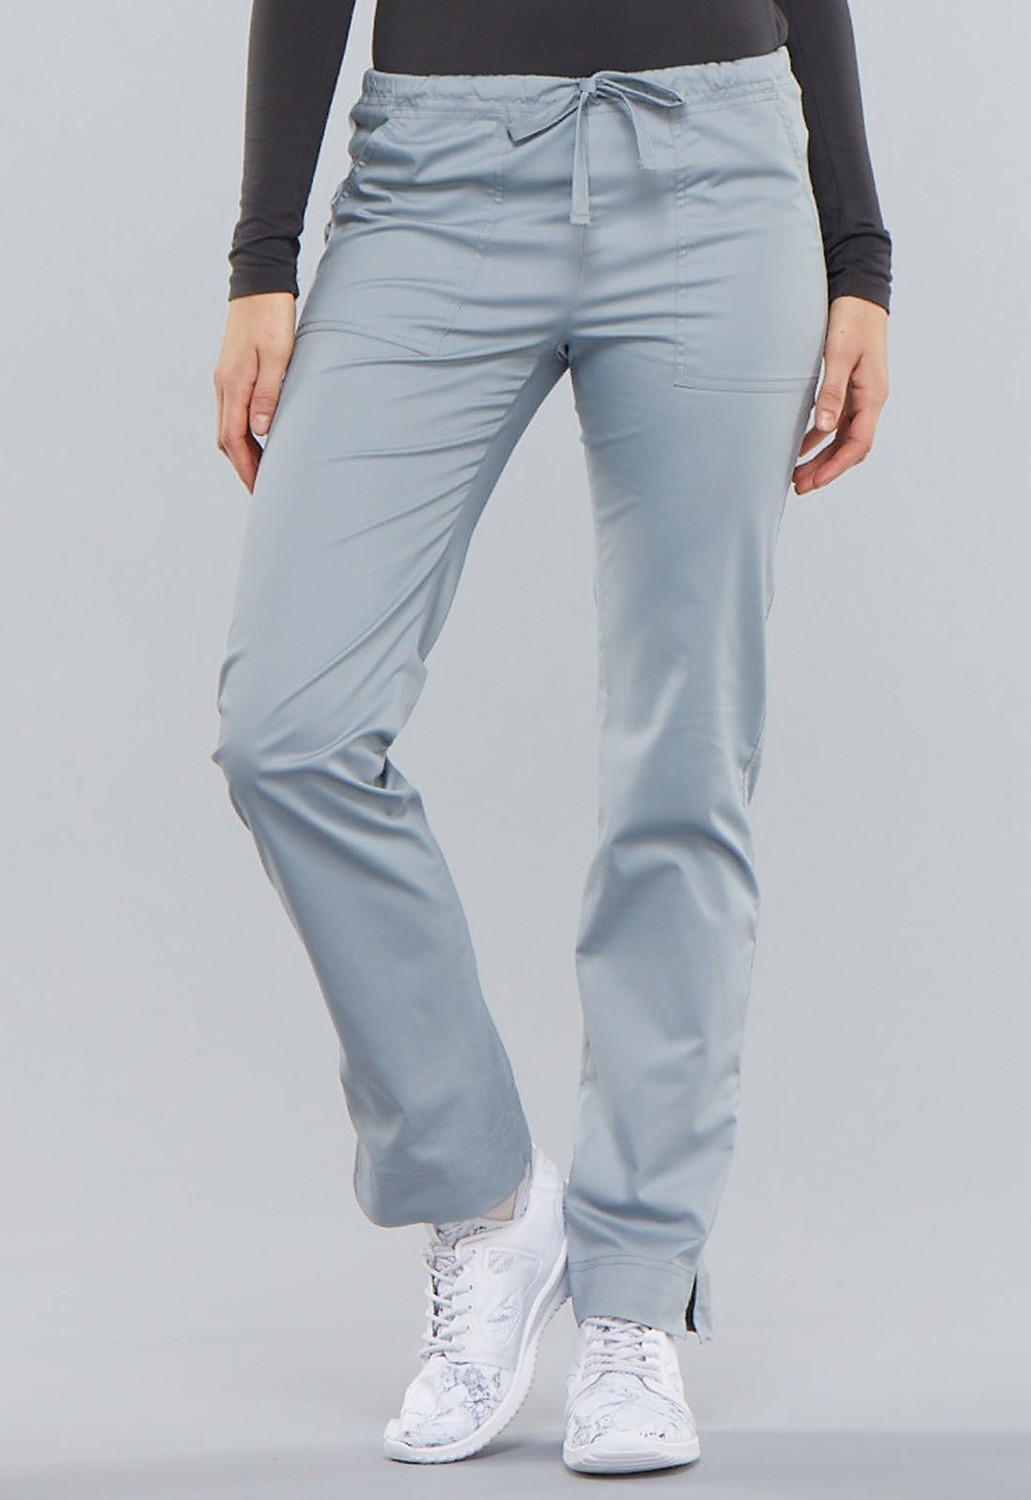 Pantalone CHEROKEE CORE STRETCH 4203 Colore Grey - COLORE FINE SERIE